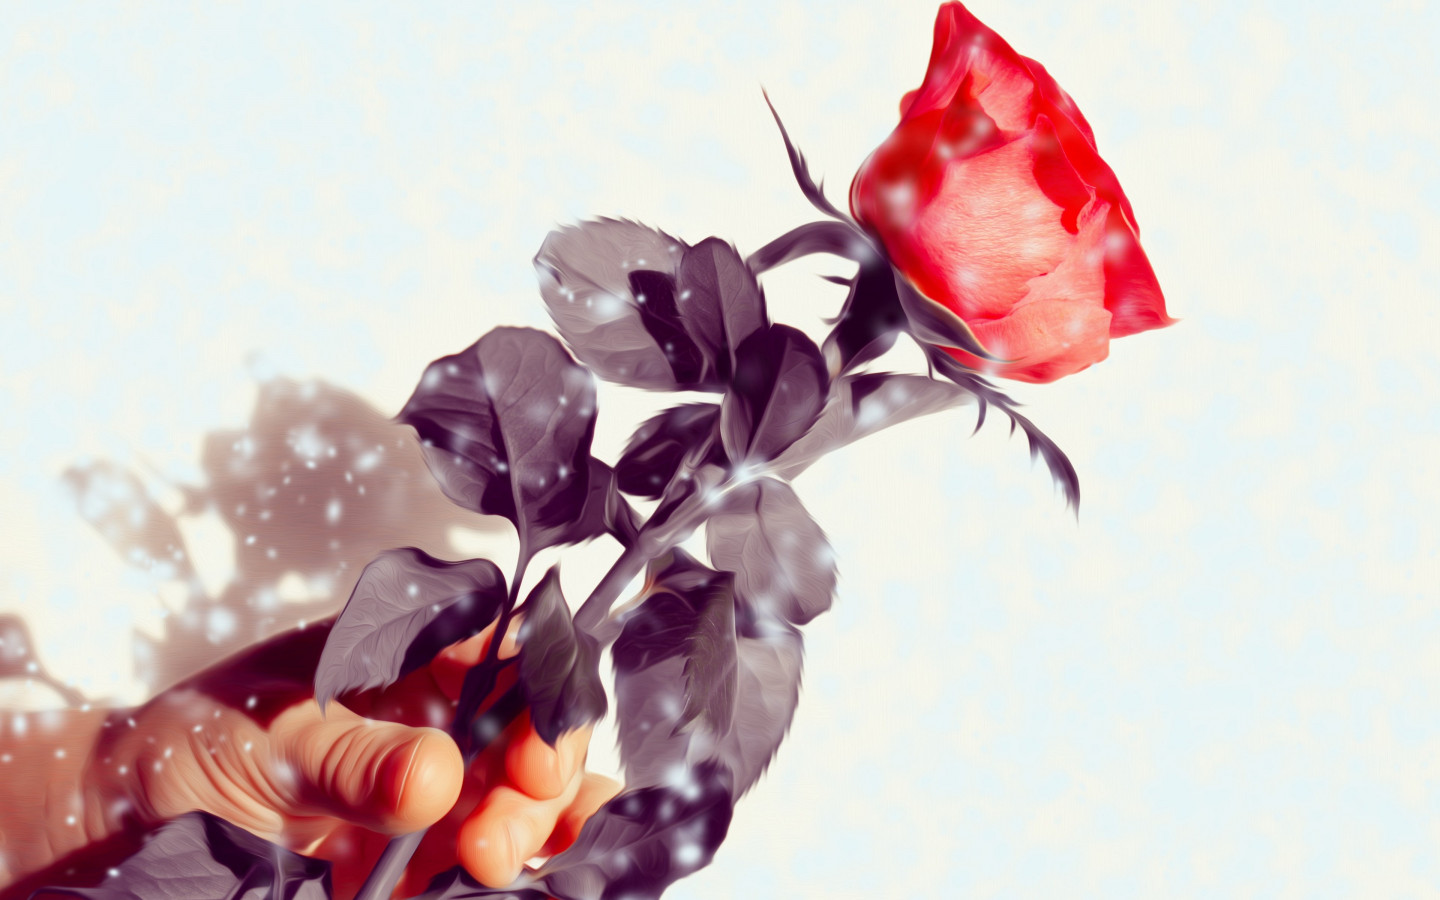 Rose flower wallpaper 1440x900